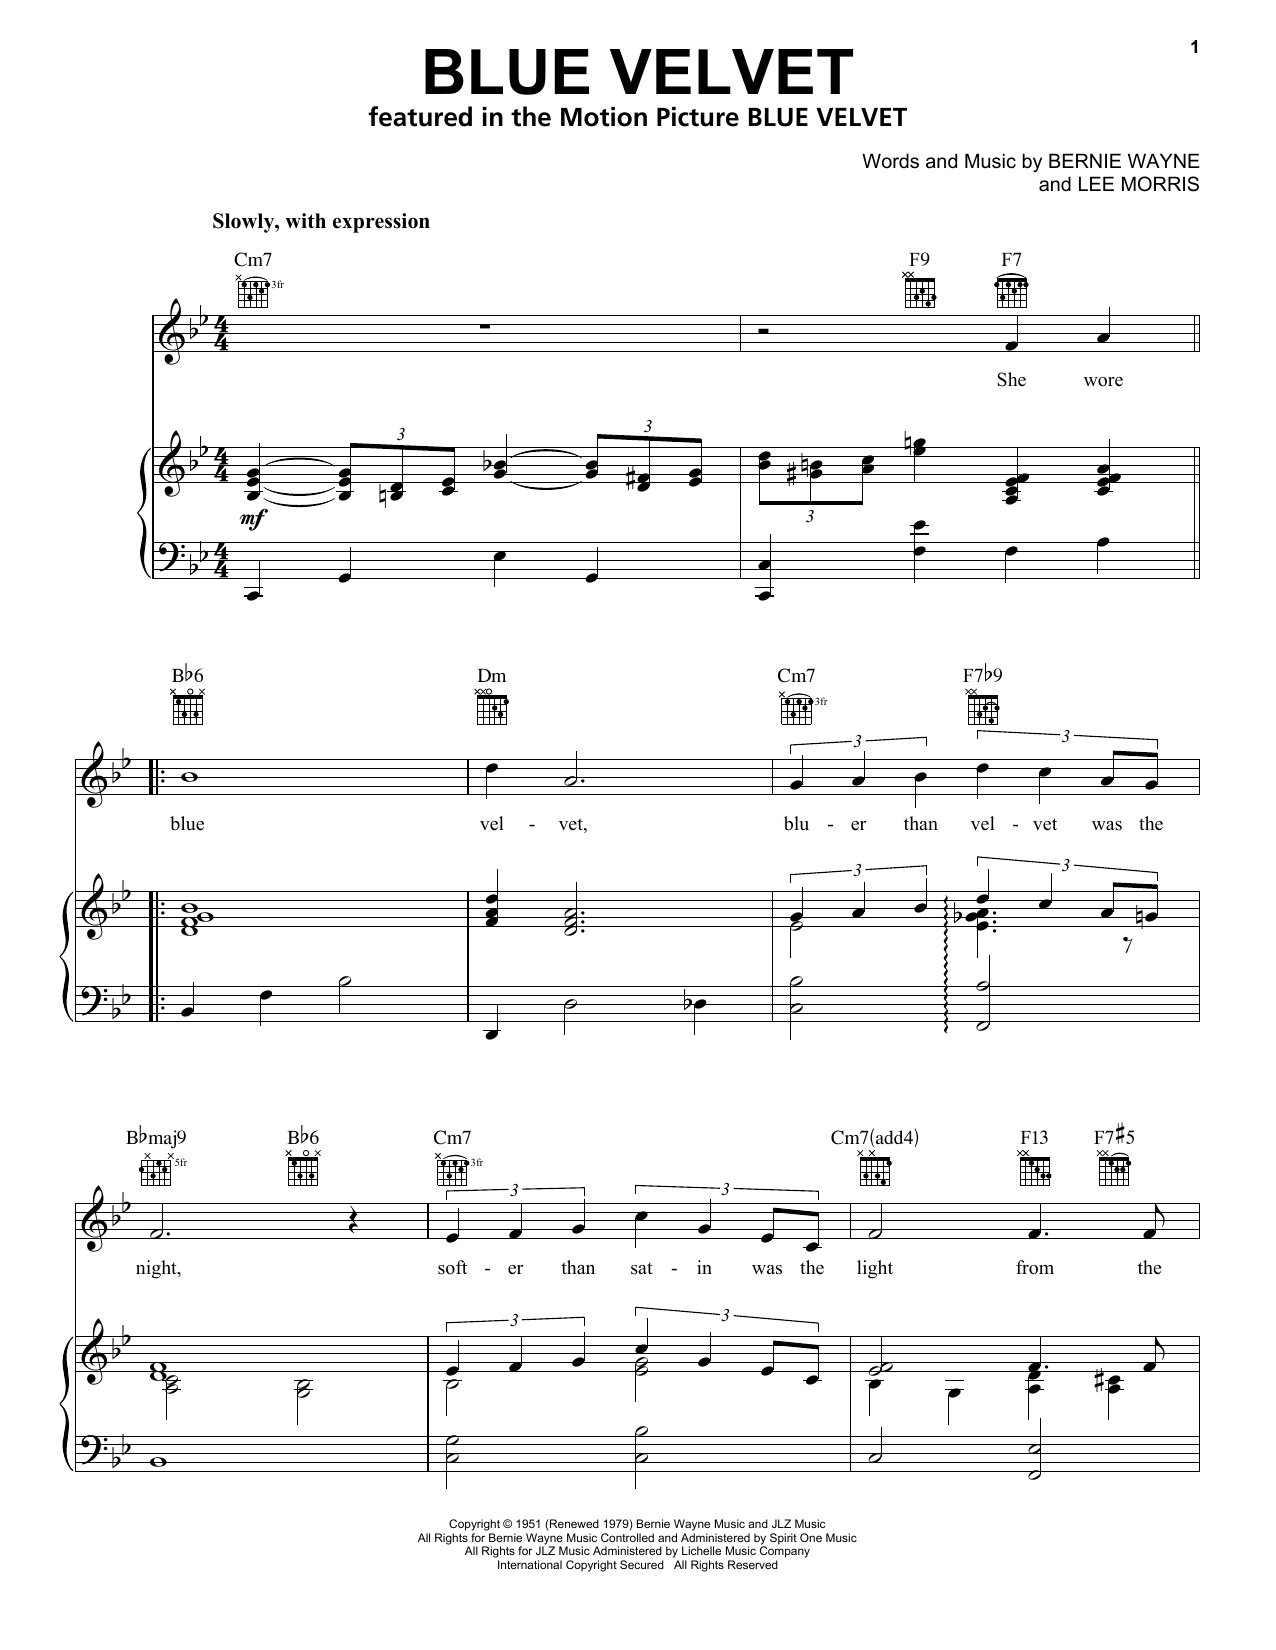 Bobby Vinton Blue Velvet Sheet Music Notes & Chords for Cello - Download or Print PDF